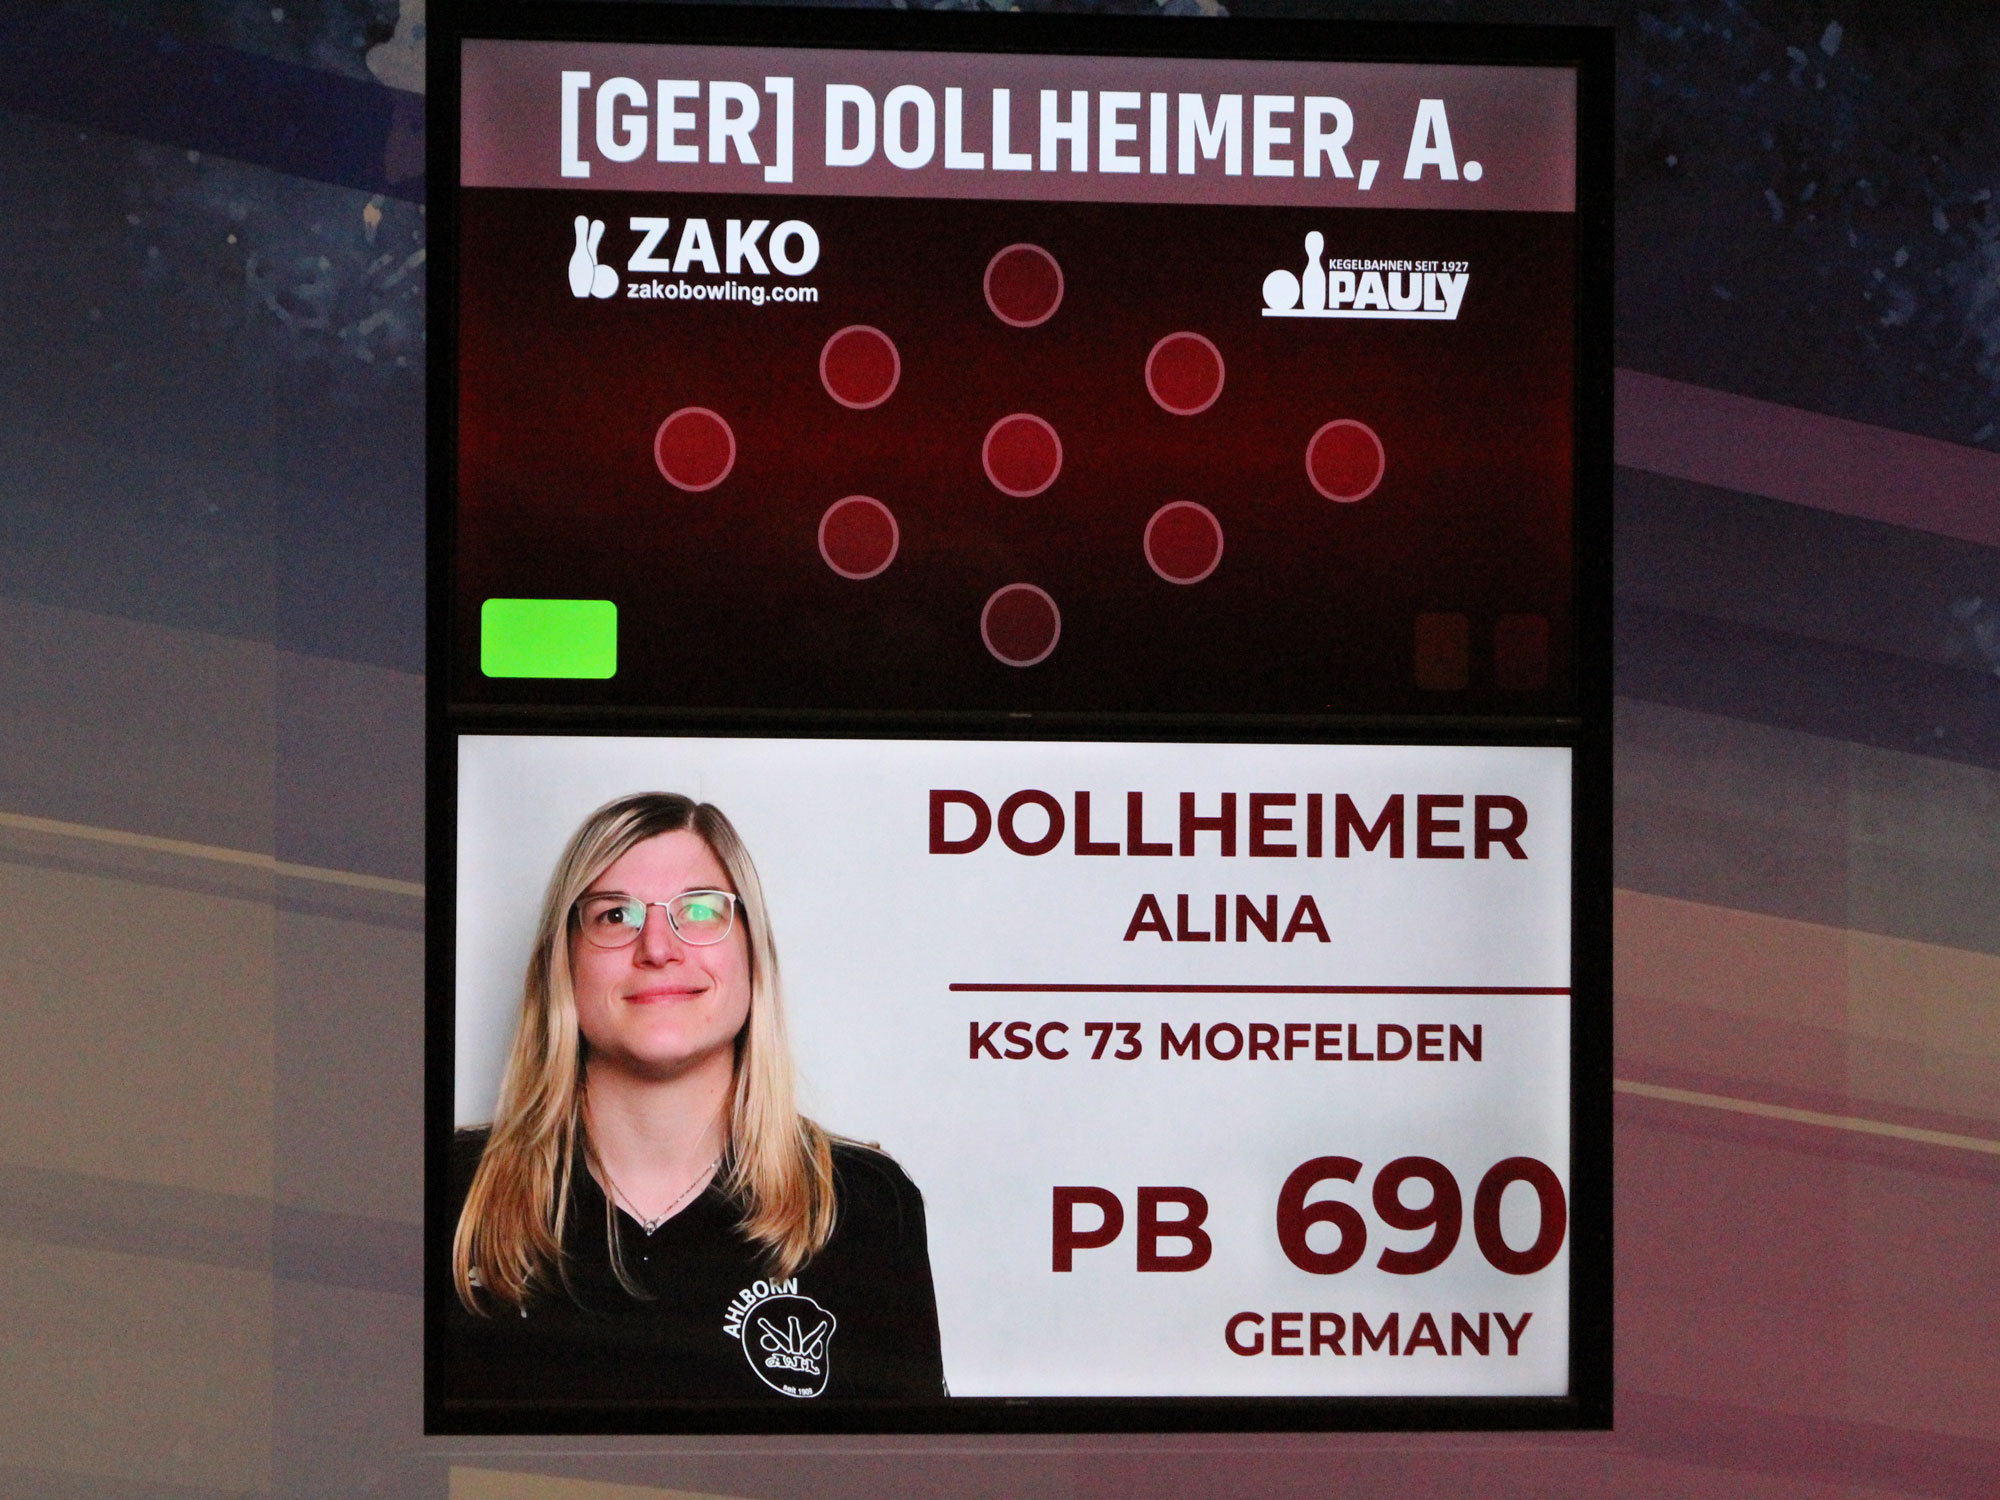 Schon im neuen Outfit: Alina Dollheimers-Porträtanzeige beim Sprint.